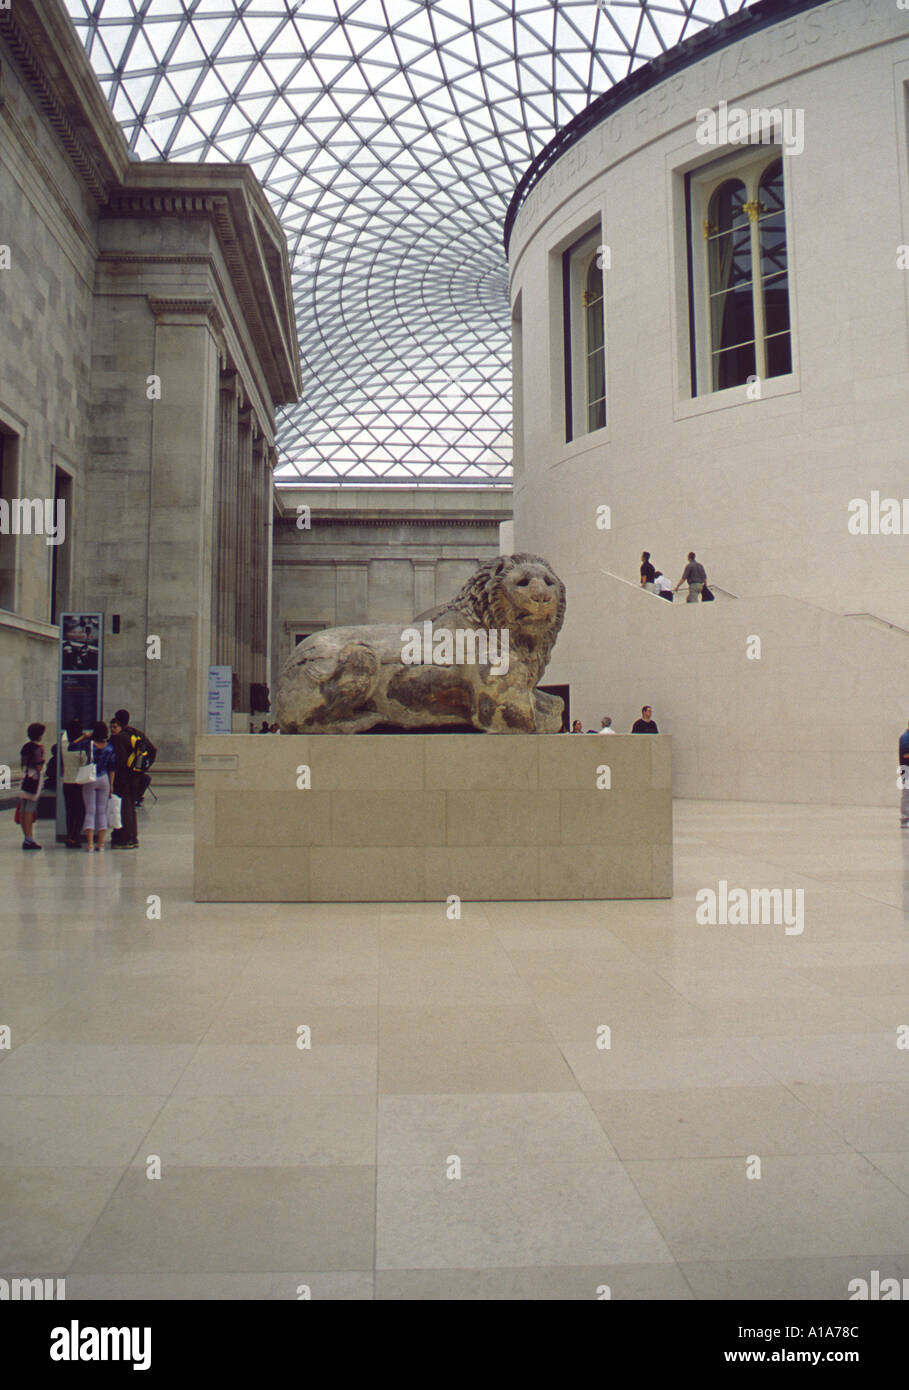 La sculpture du lion Banque D'Images